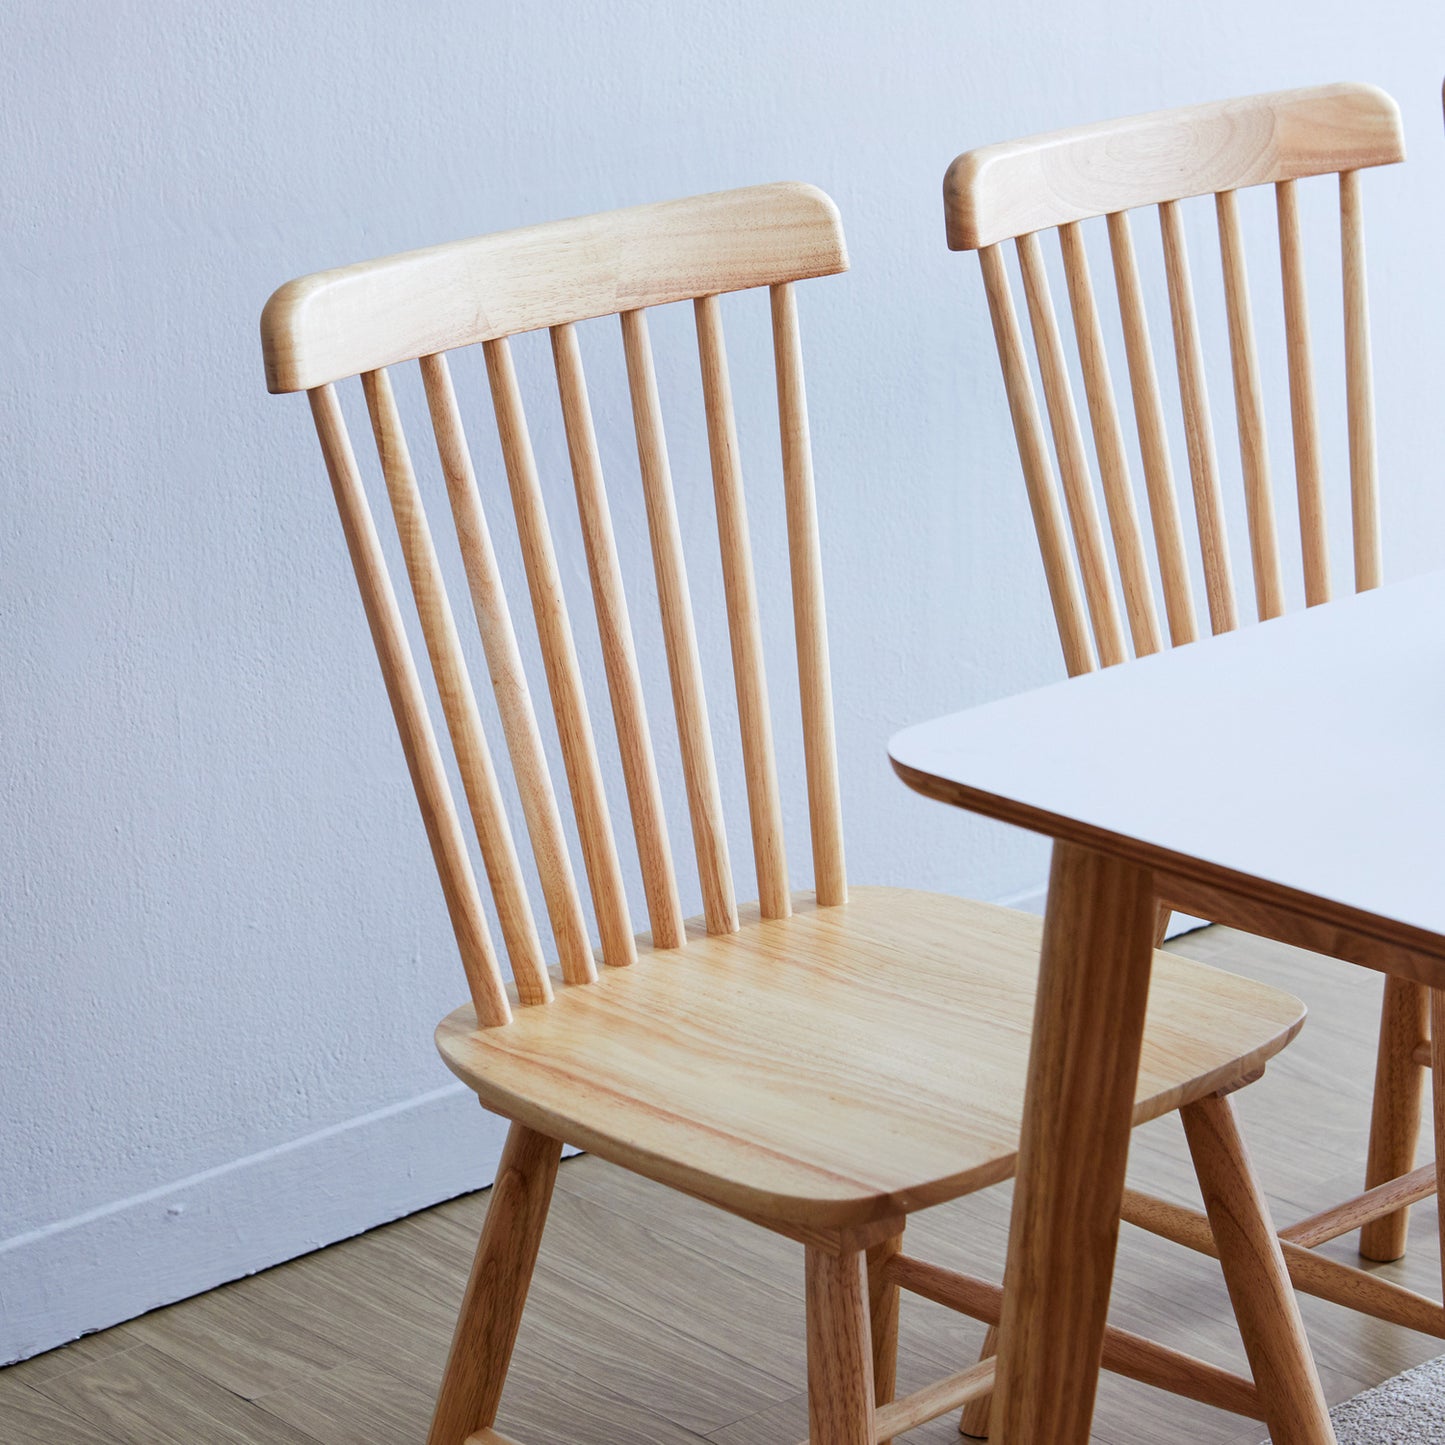 Aslan Dining Chairs Set of 2